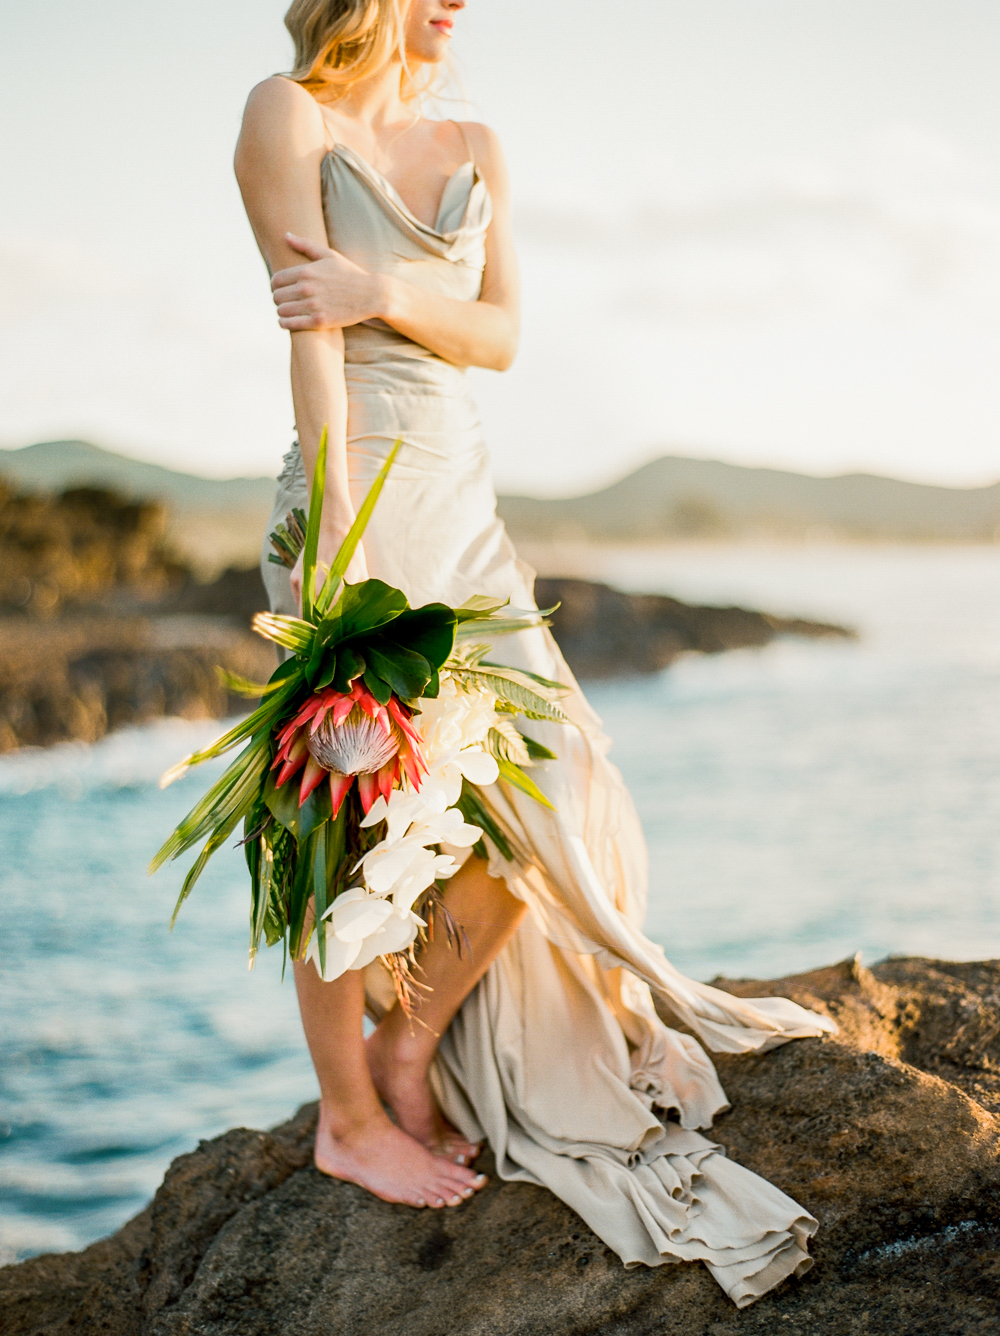 Makapuu_Beach_honolulu_oahu_hawaii_bride_portraits_016.jpg